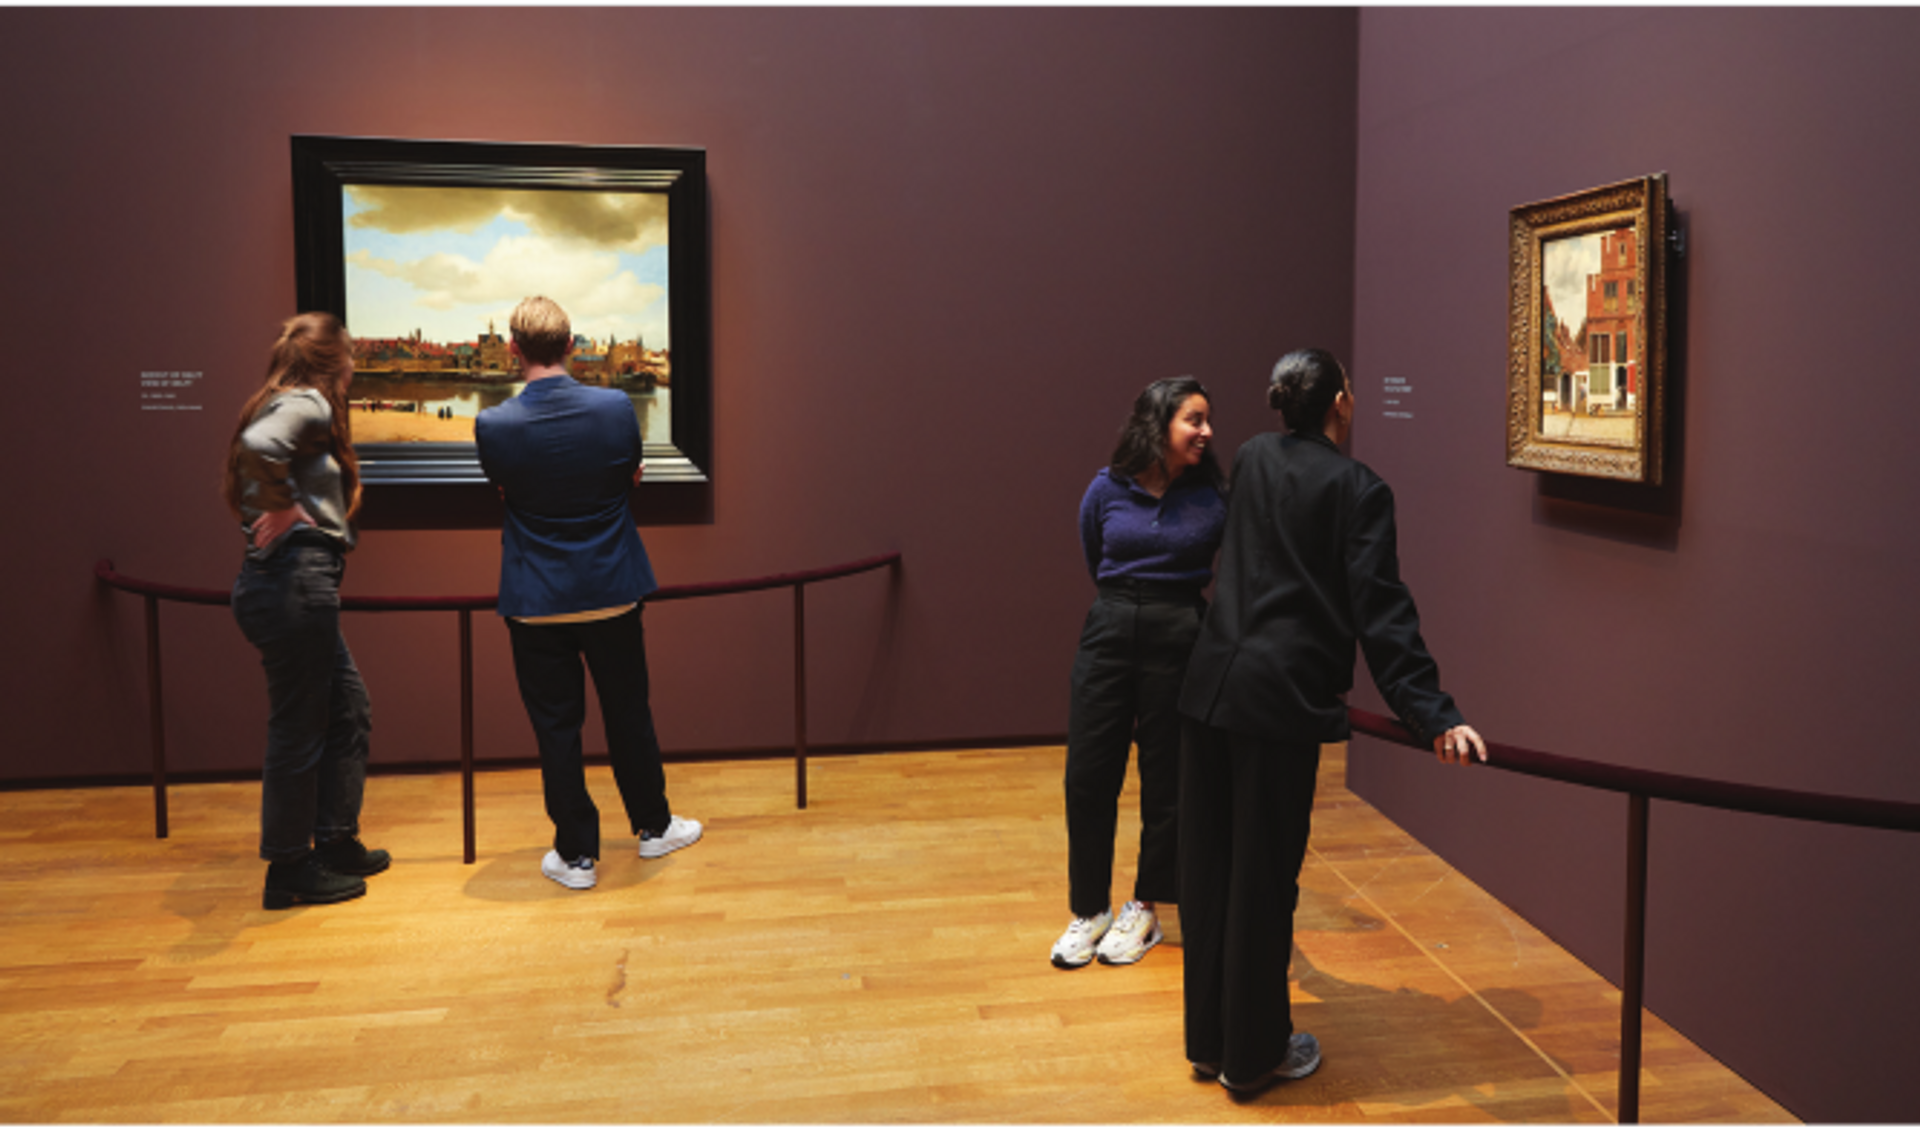 Vues de l’exposition « Vermeer », Rijksmuseum, Amsterdam, 2023.
Photo Rijksmuseum/Henk Wildschut